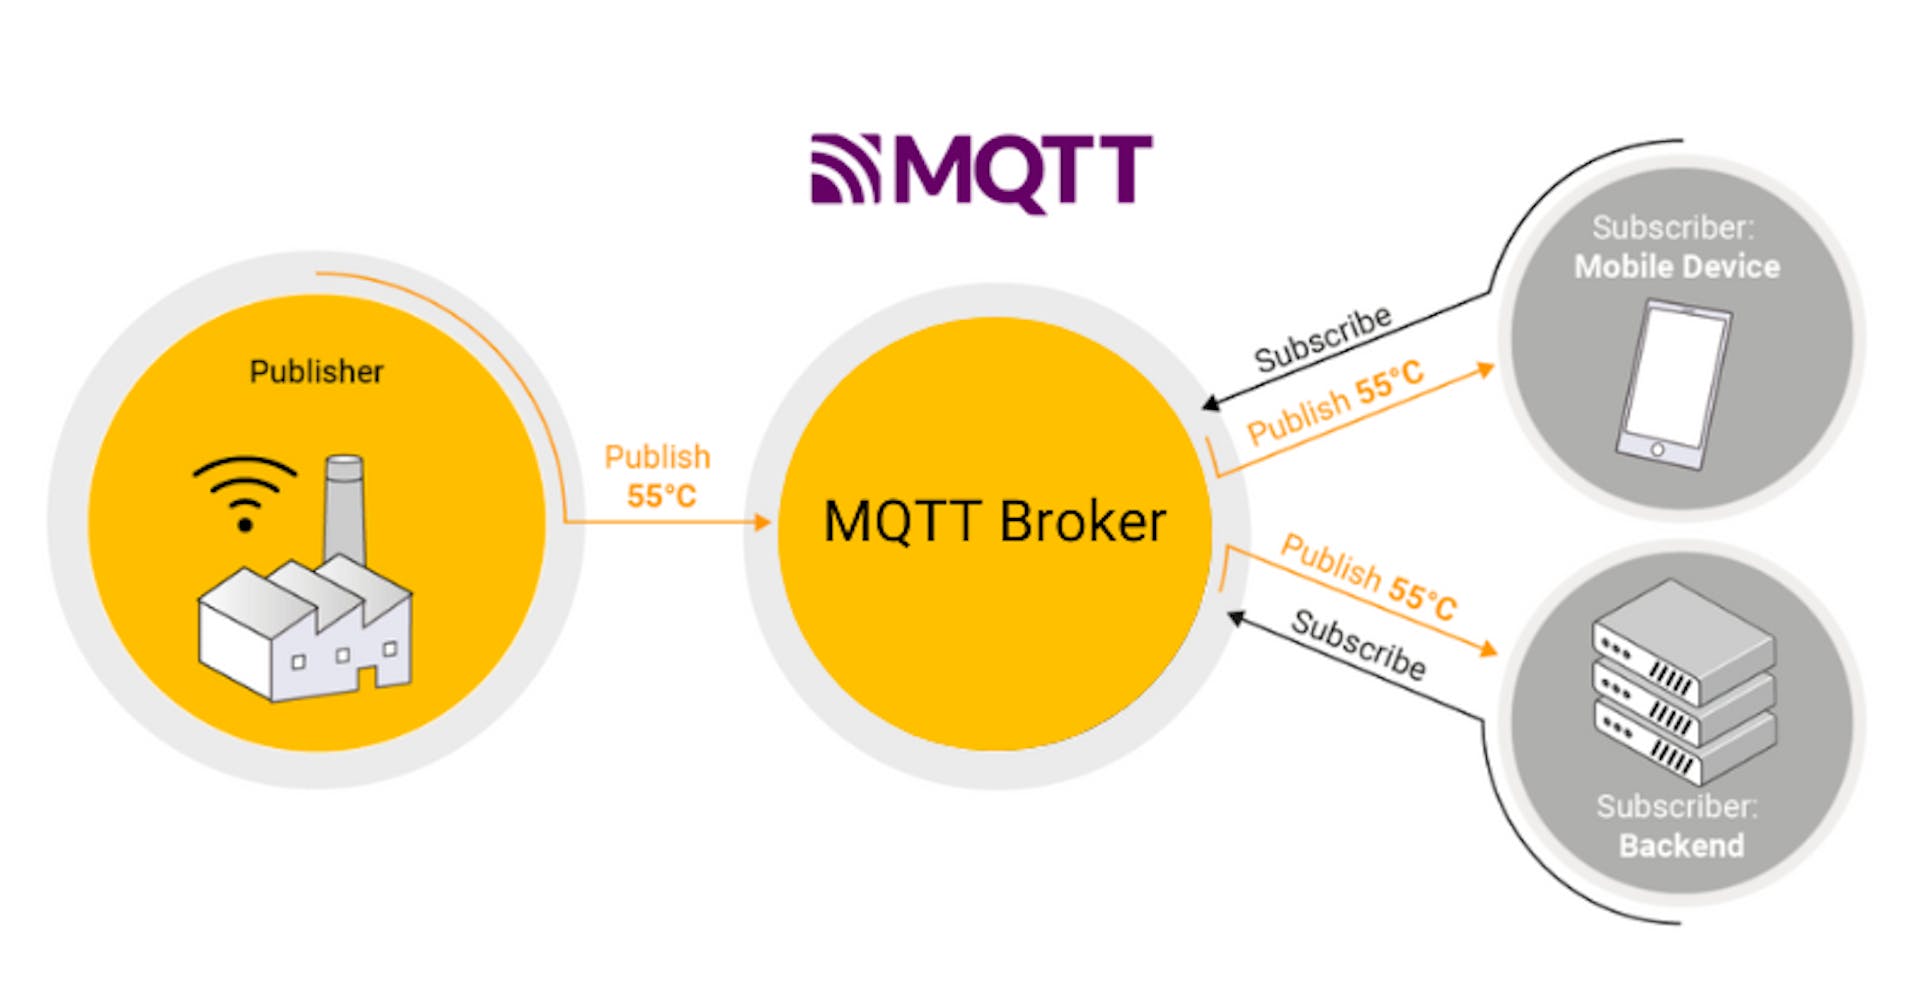 Hình 1: Cách hệ thống nhắn tin dựa trên MQTT hoạt động